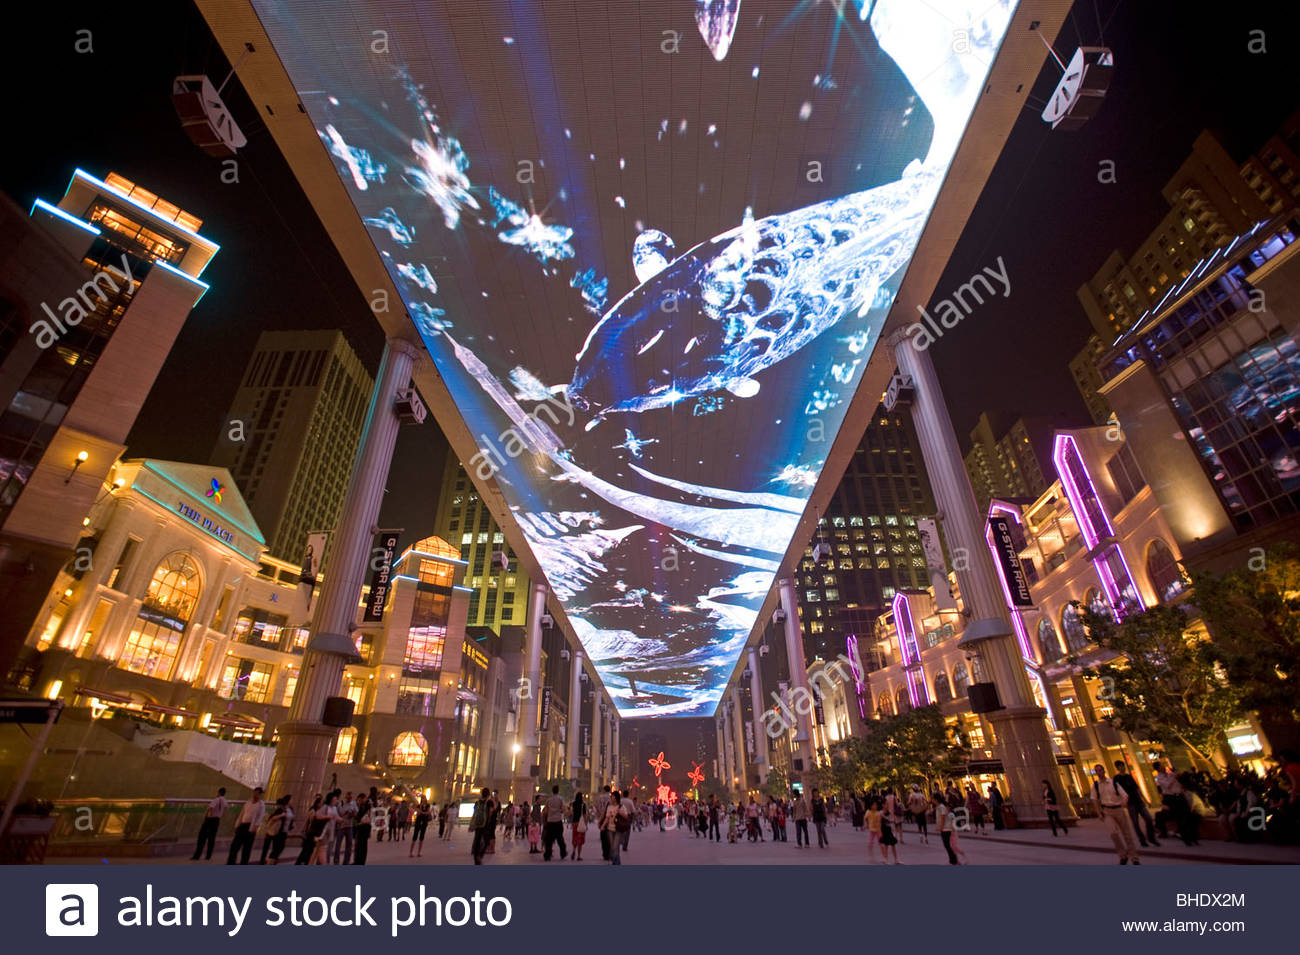 world's biggest led screen